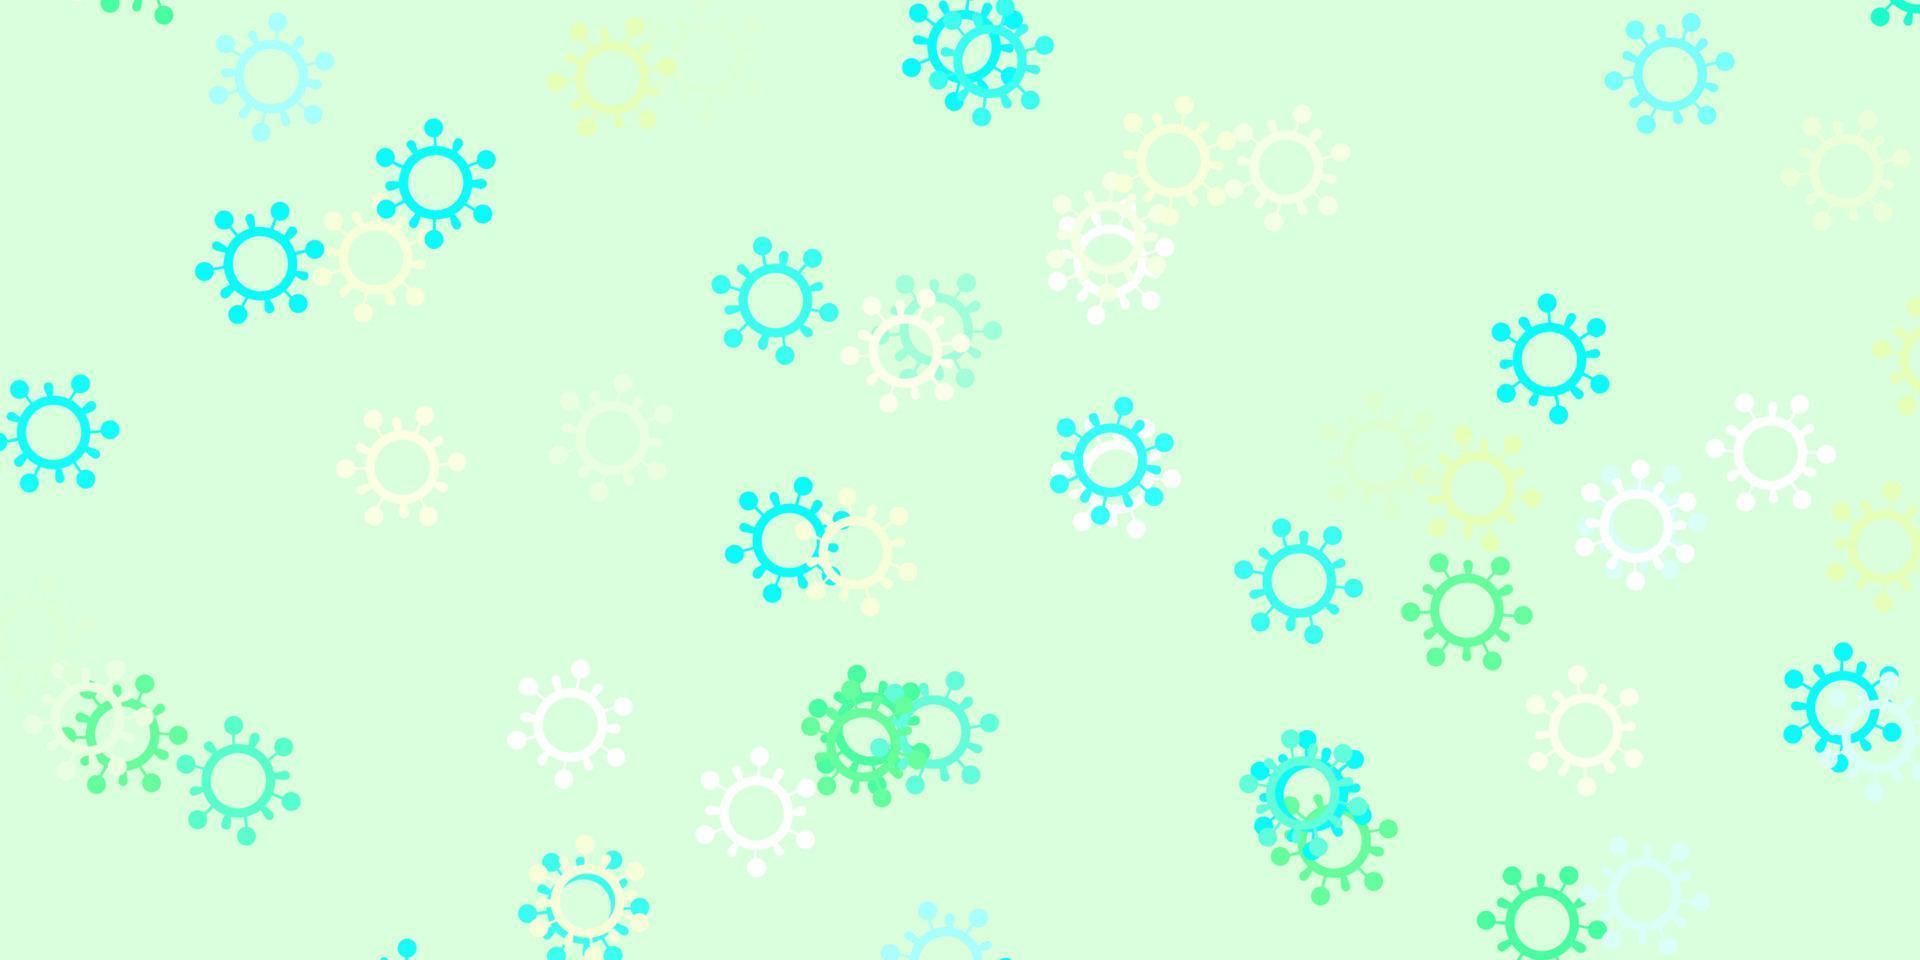 toile de fond de vecteur bleu clair, vert avec symboles de virus.